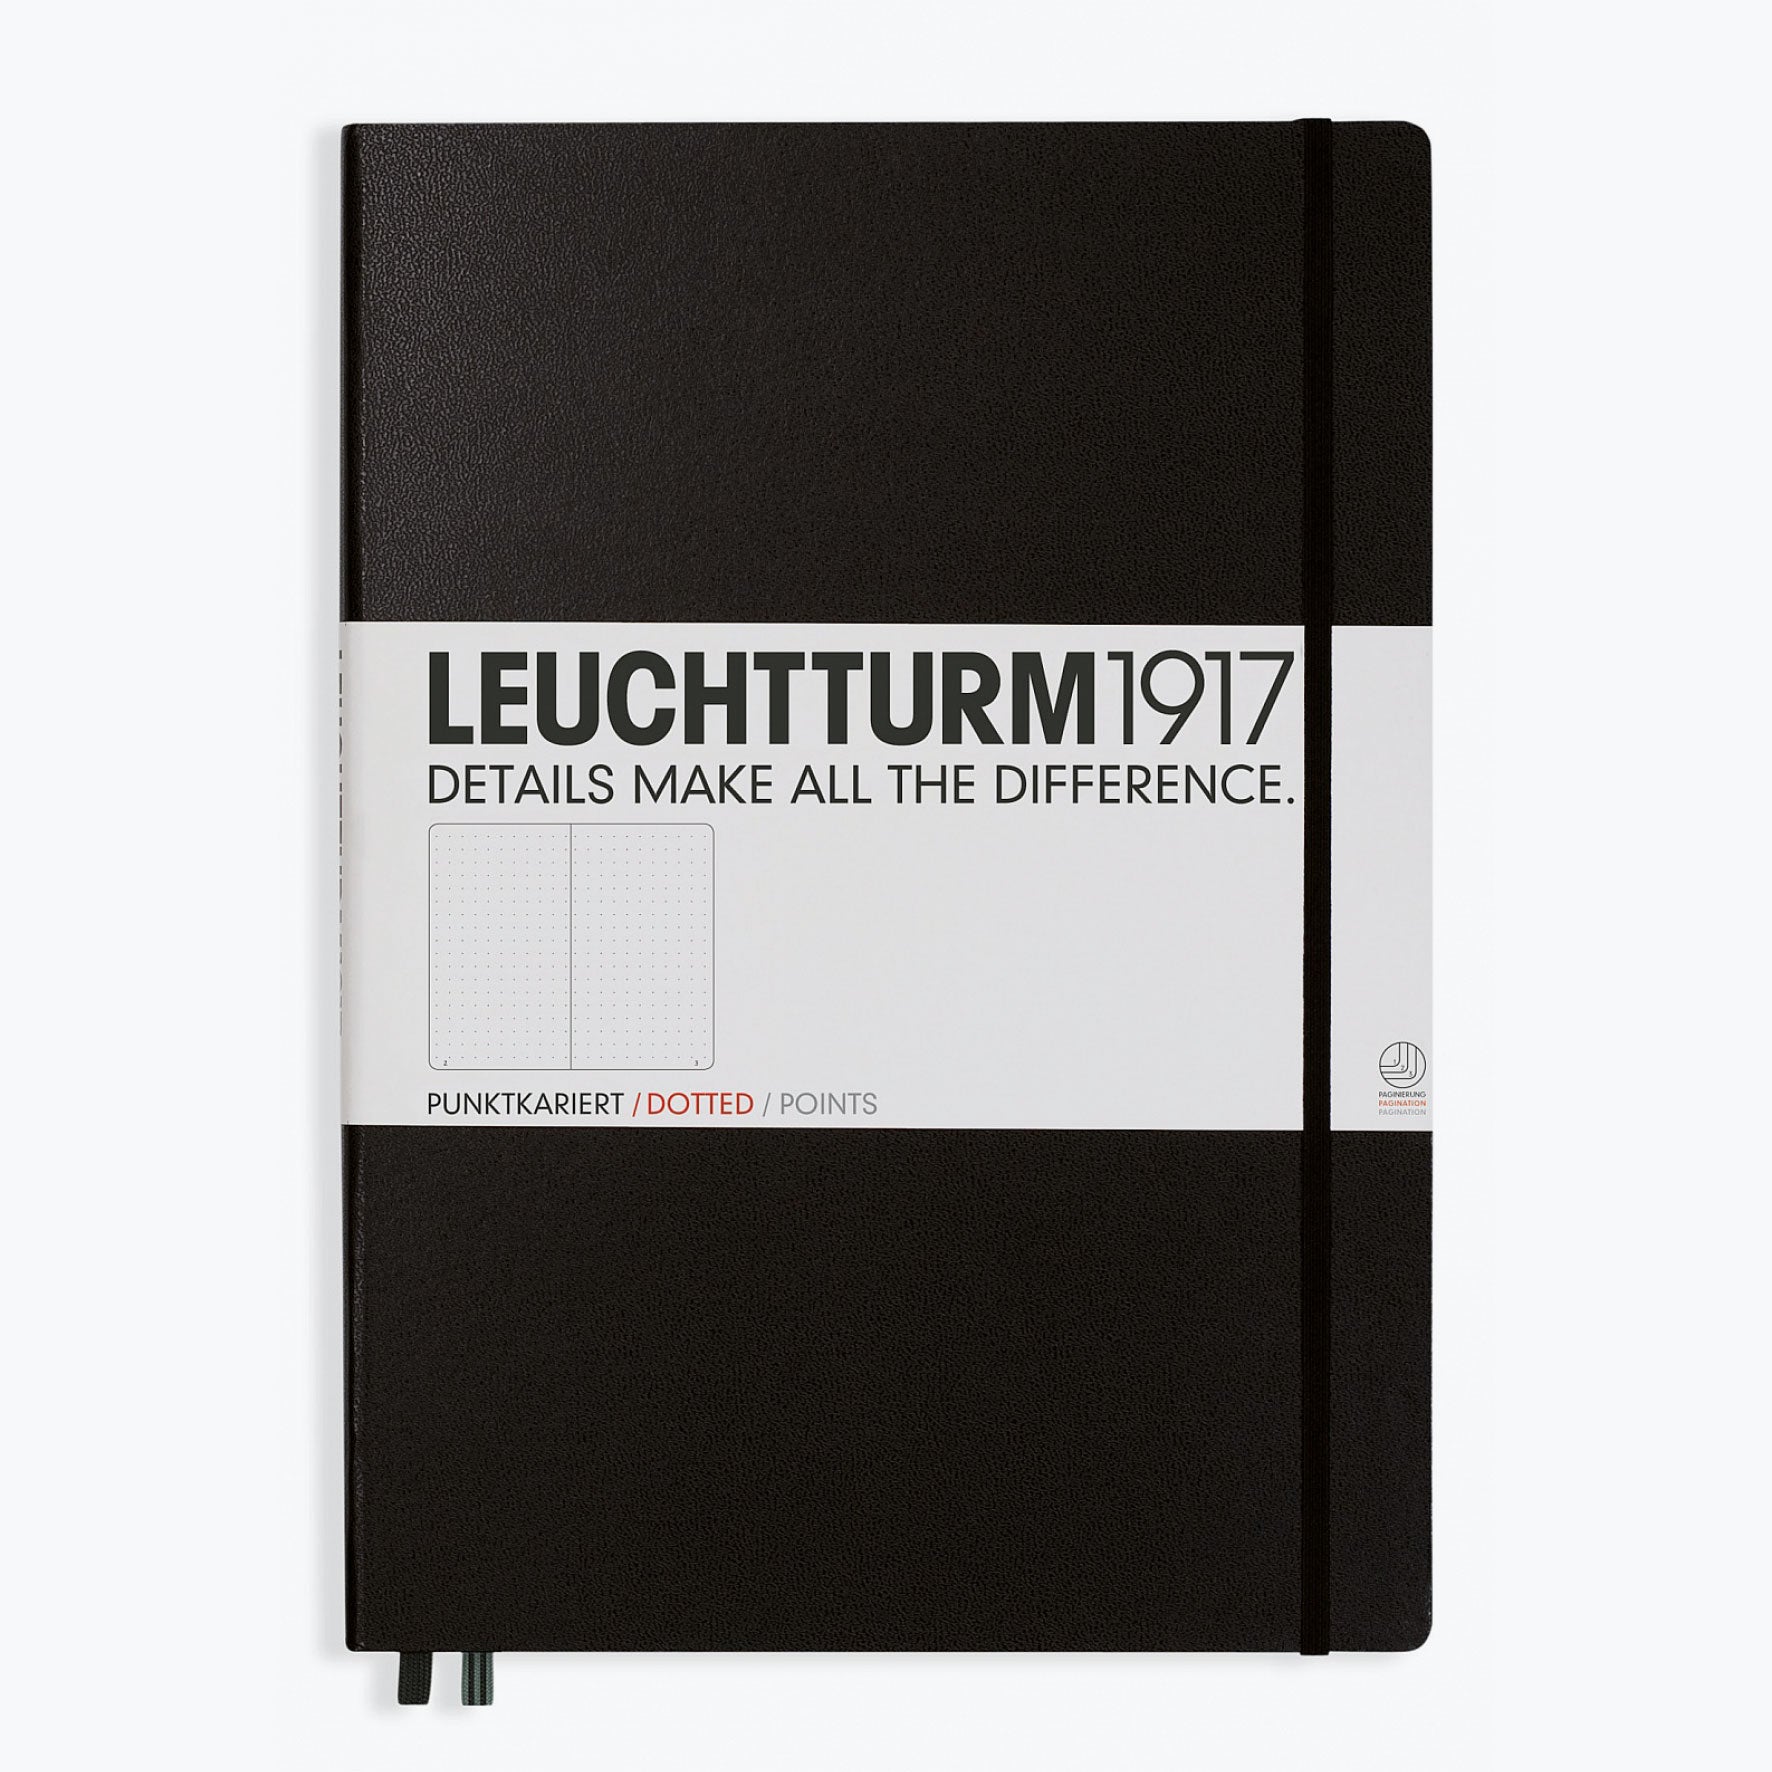 Leuchtturm1917 - Notebook - A4+ - Black